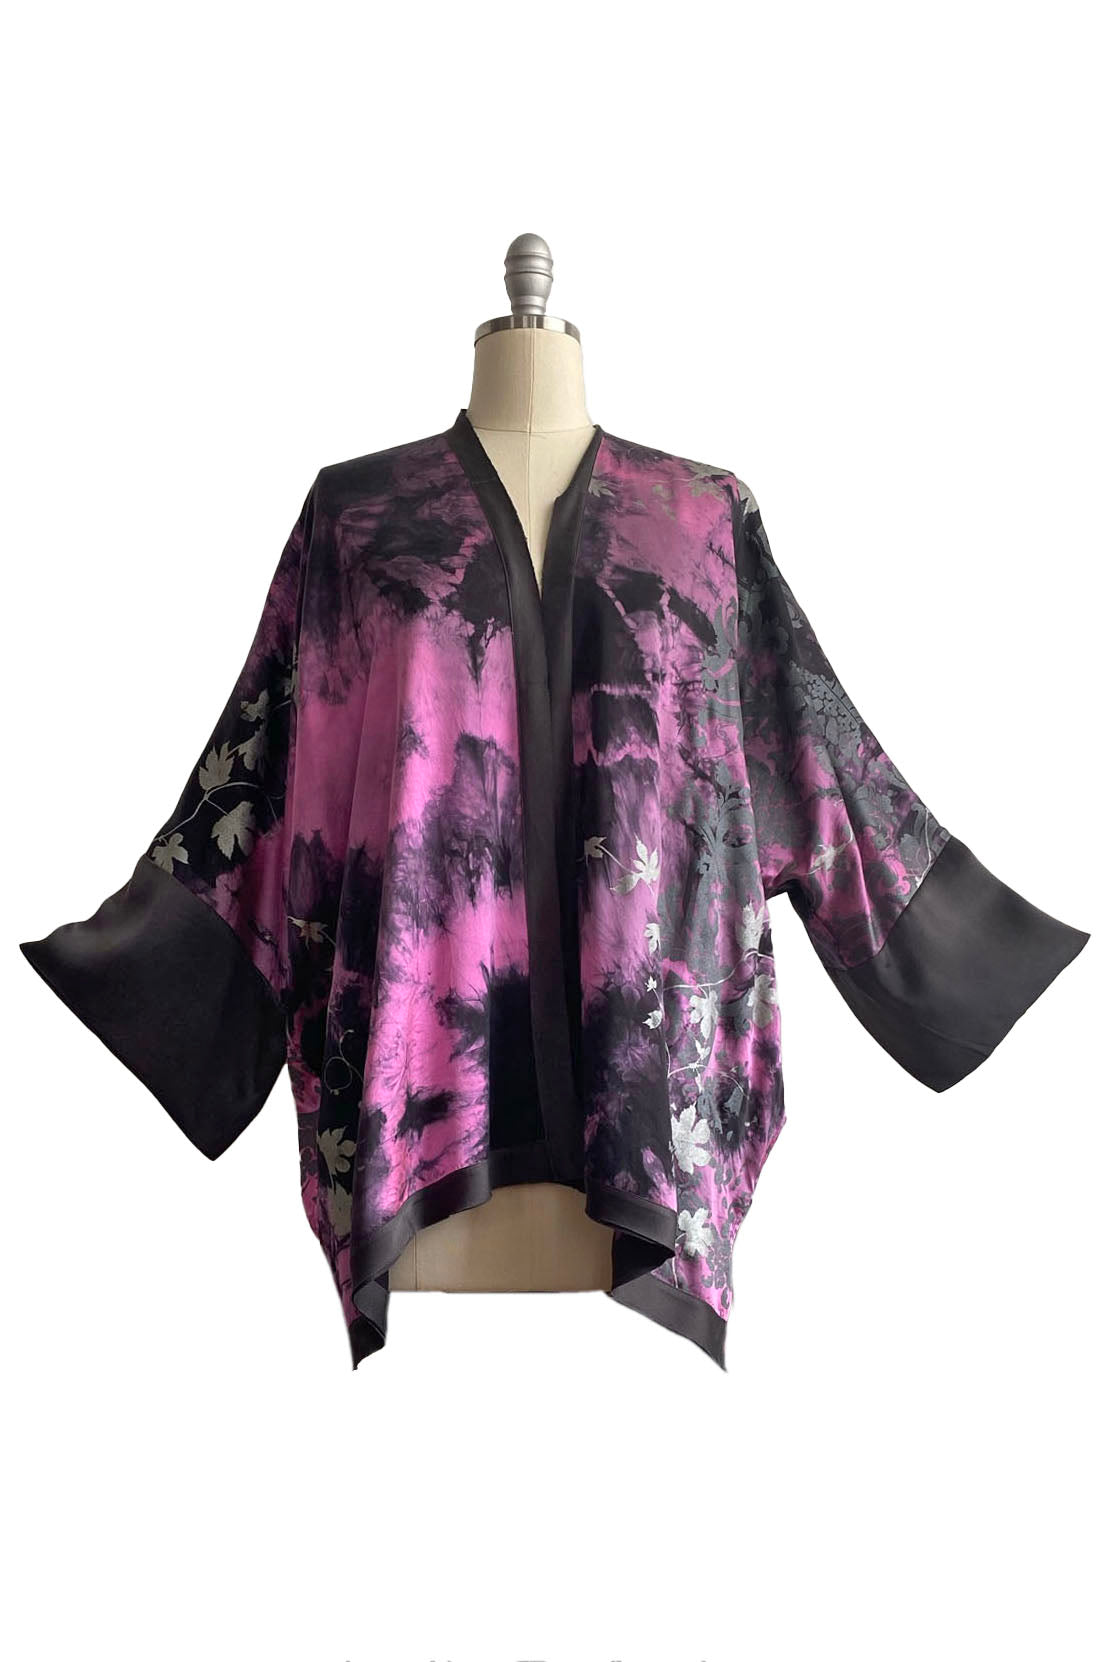 Lucianne Kimono Tie Dye w/ Hops Vine - Pink & Black